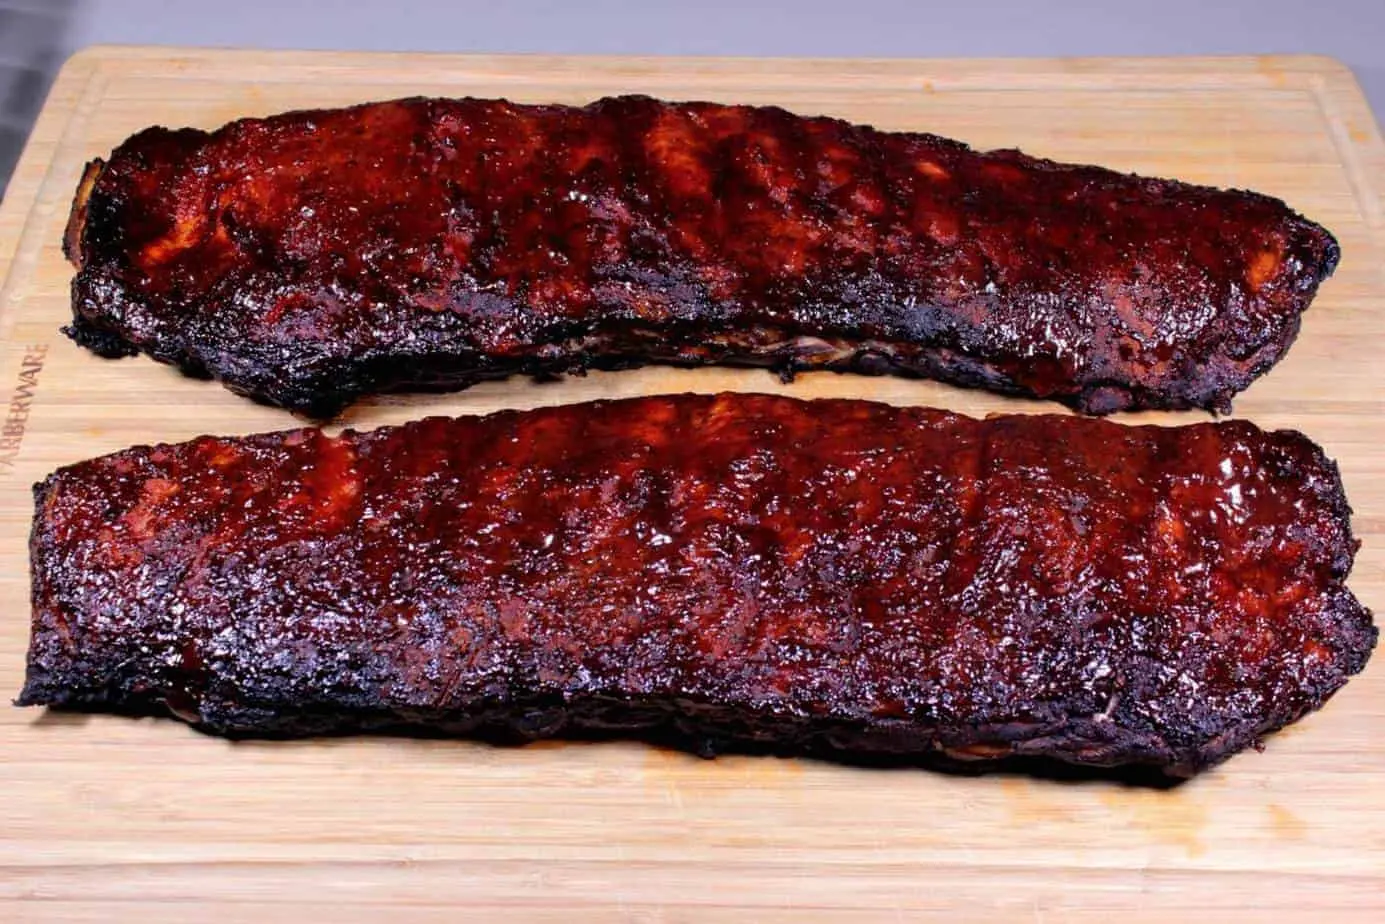 123 smoked ribs - How long to smoke ribs at 120 degrees celsius